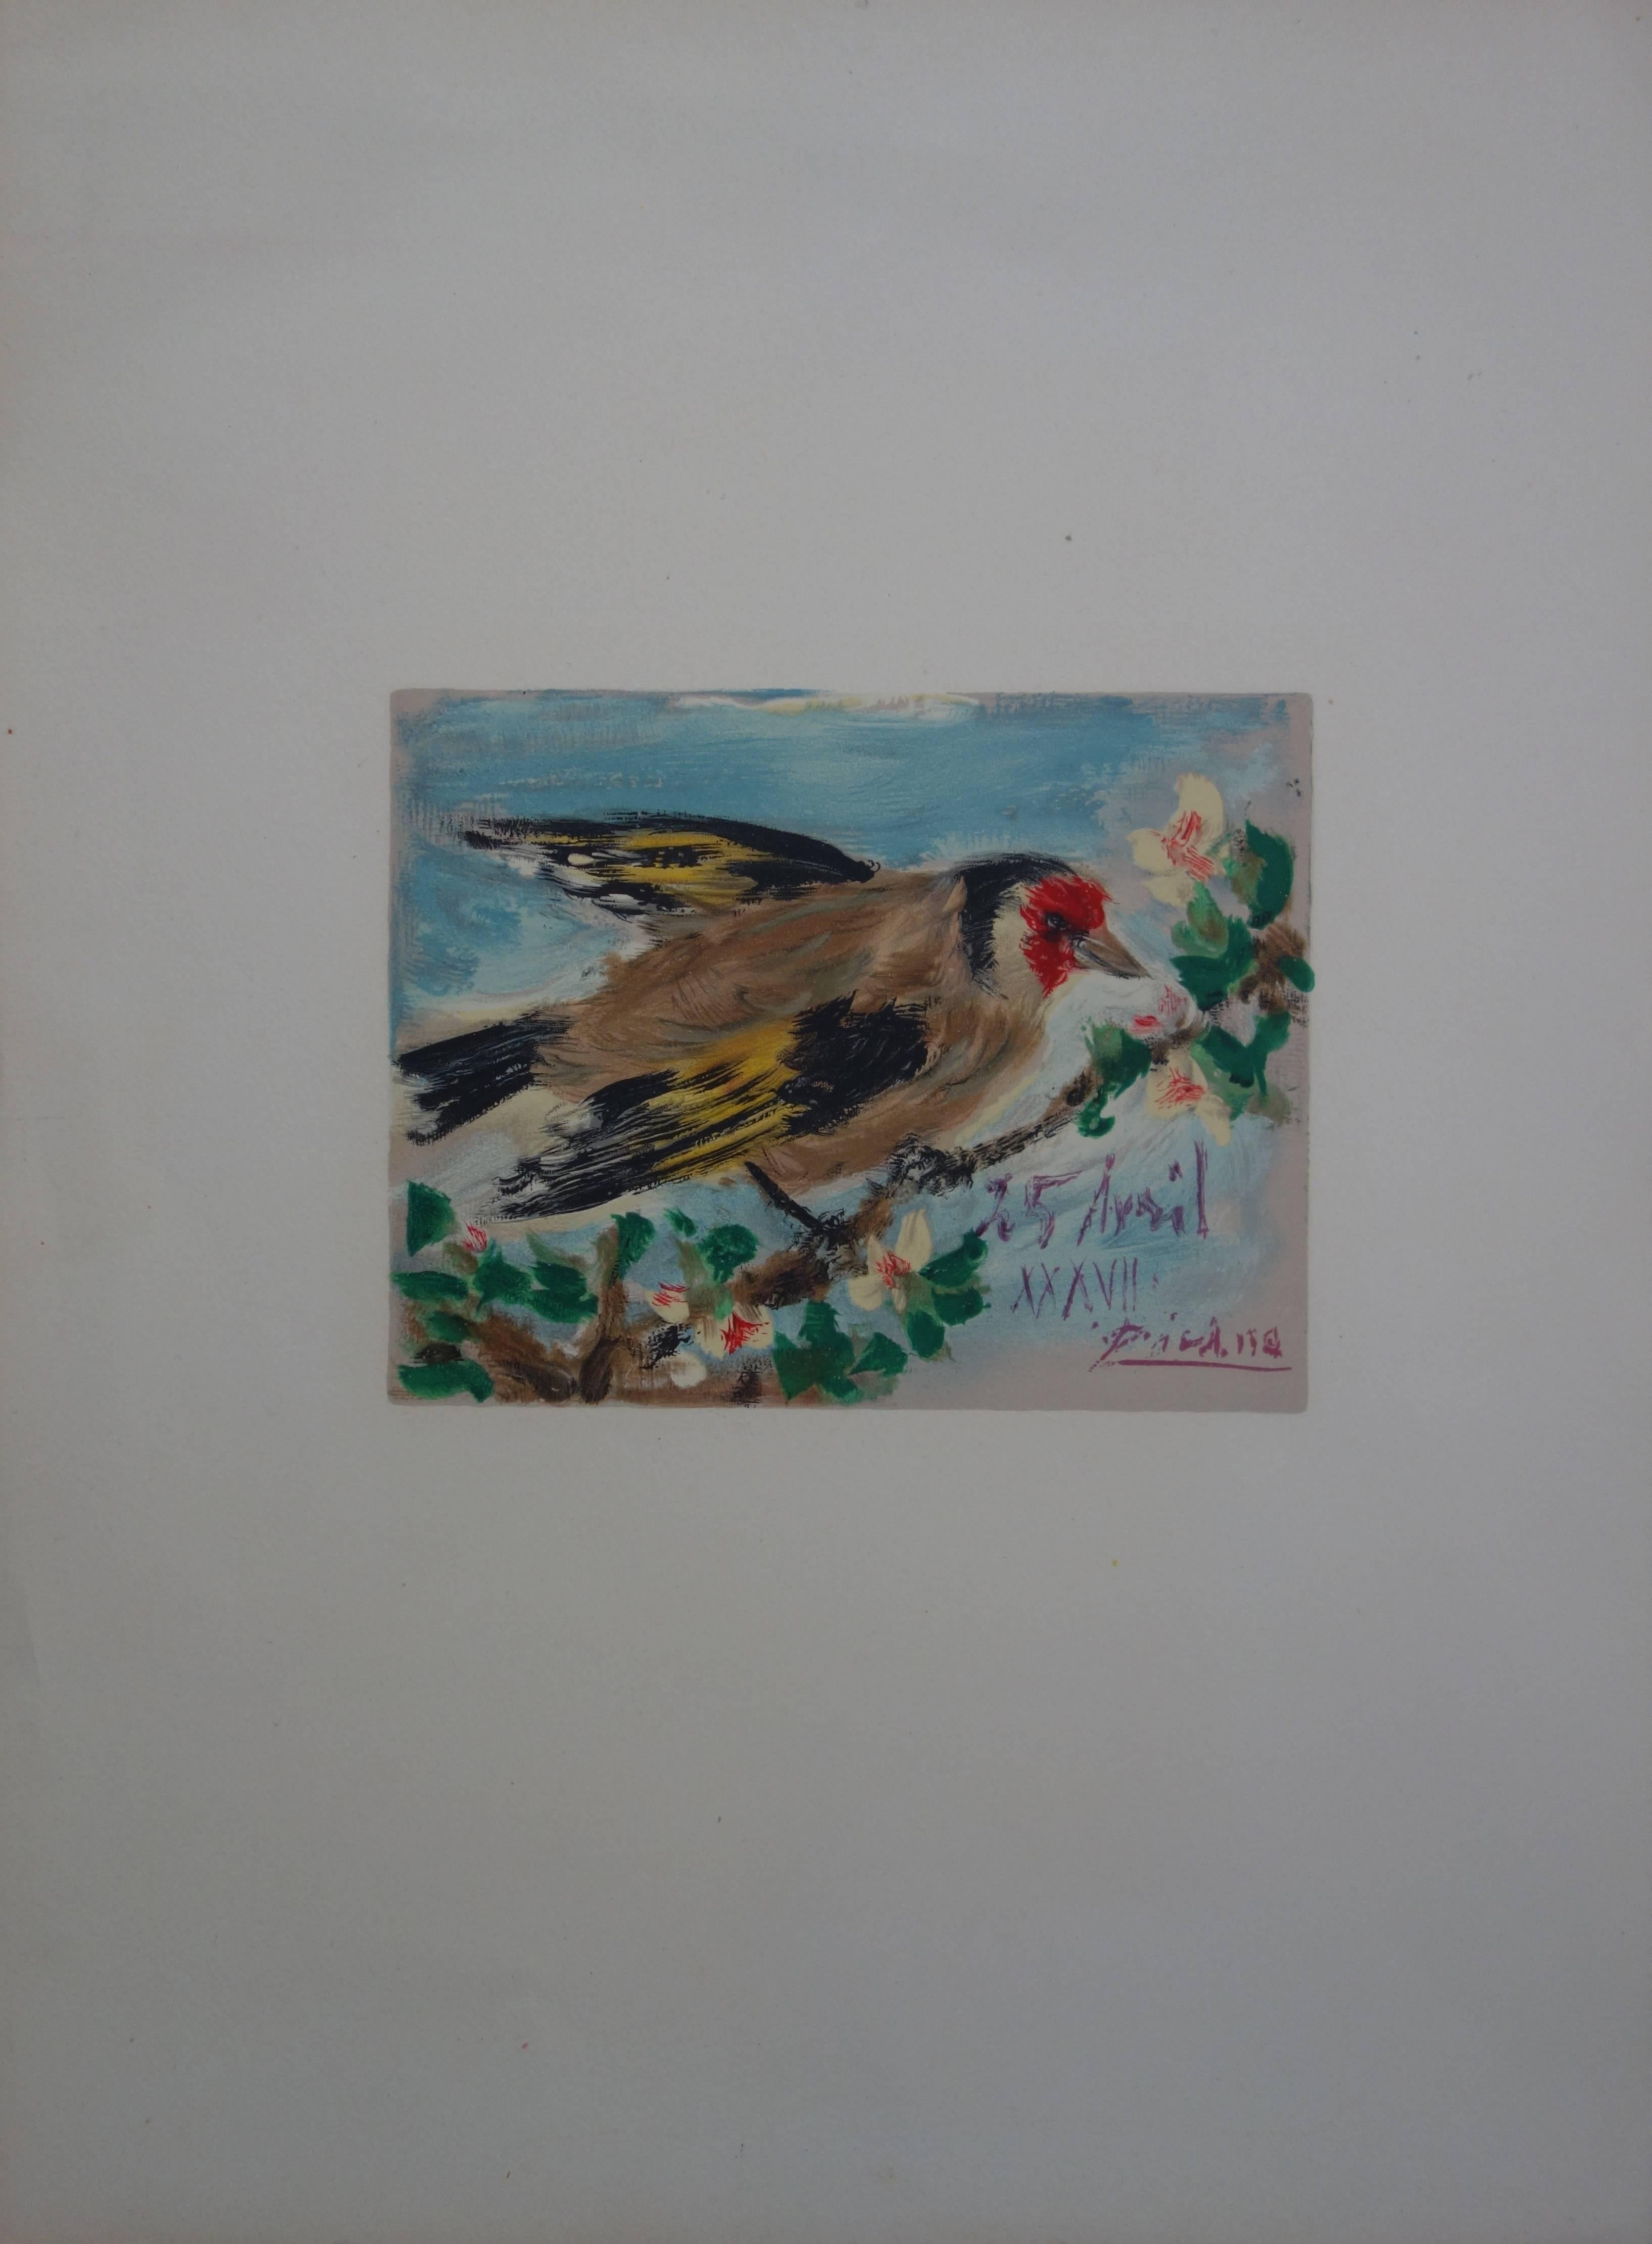 Oiseau sur un arbre en fleurs - Lithographie - 1957 - Réalisme Print par (after) Pablo Picasso